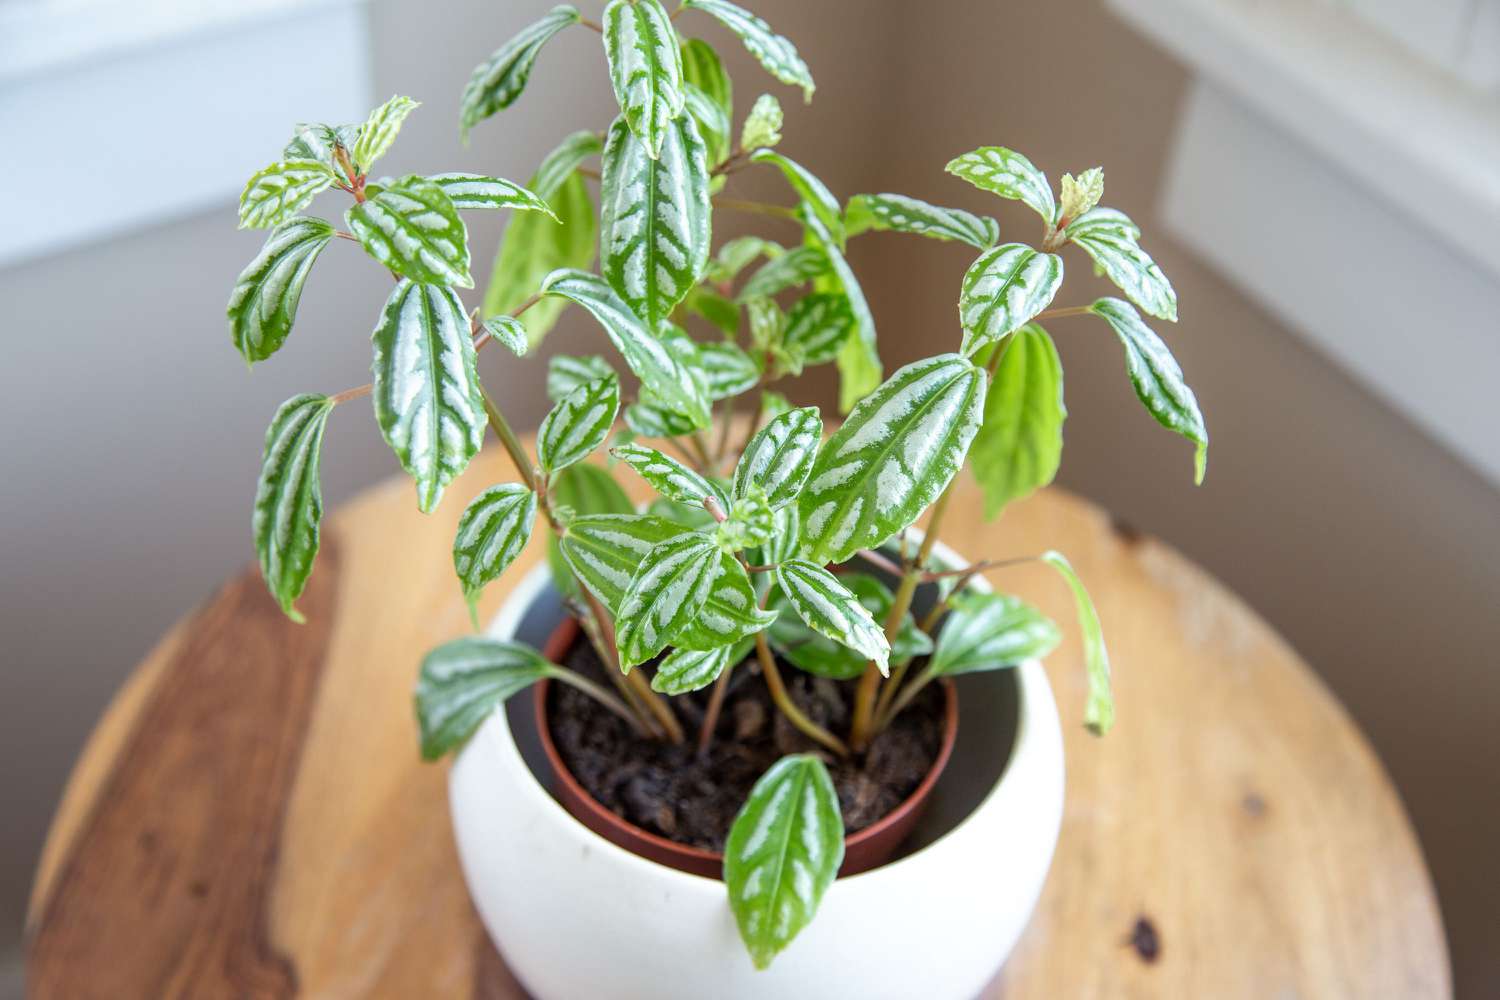 Aluminiumpflanze im weißen Topf mit bunten silbernen und grünen Blättern